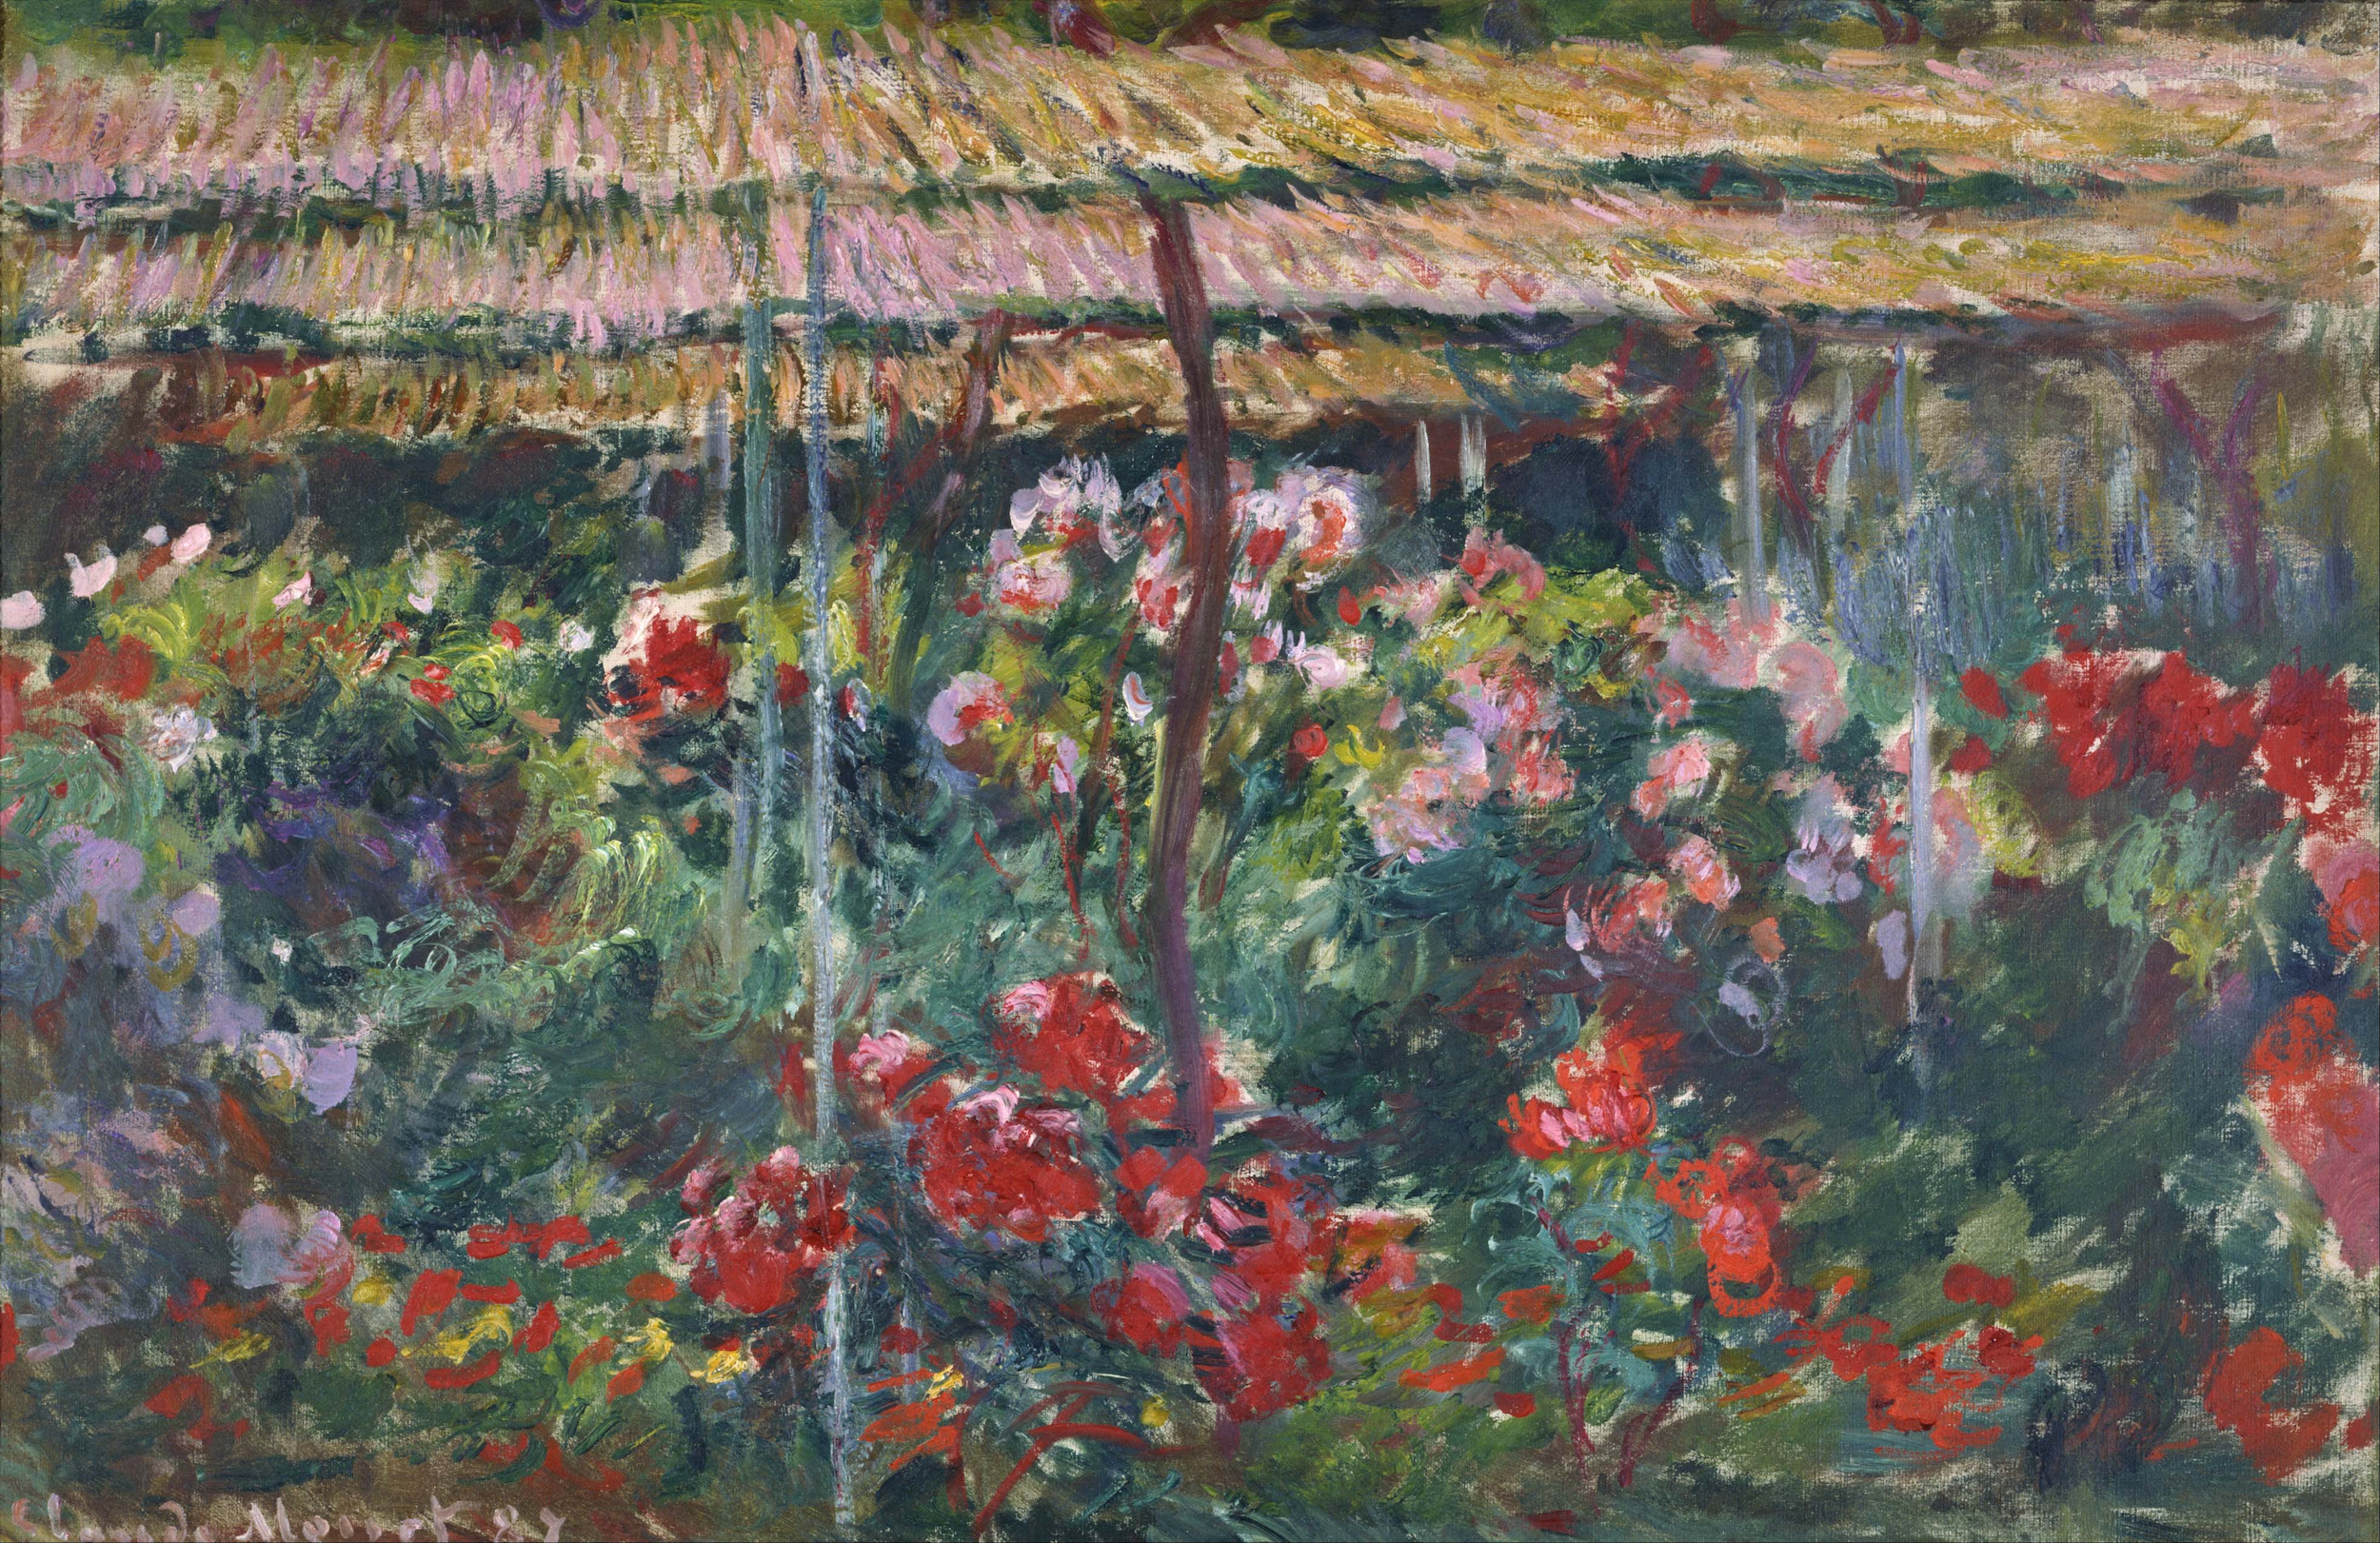 Pfingstrosen Garten by Claude Monet - 1887 - 100 x 65.3 cm Das Nationalmuseum für westliche Kunst